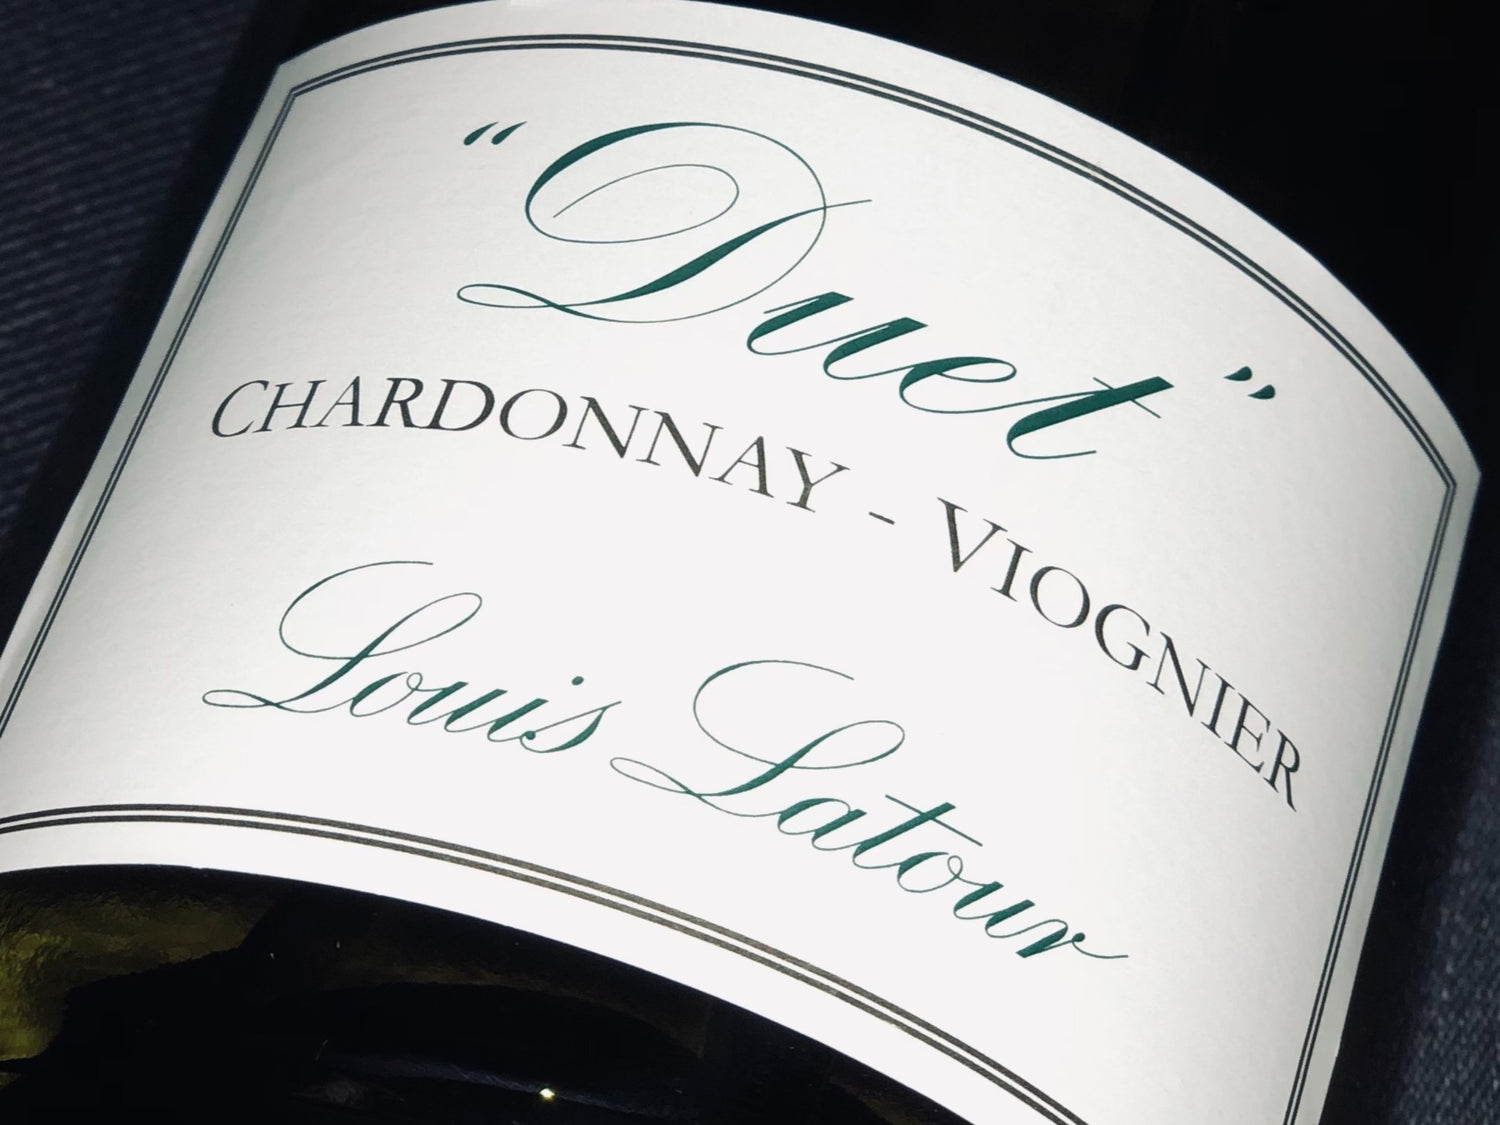 Chardonnay eller Viognier?